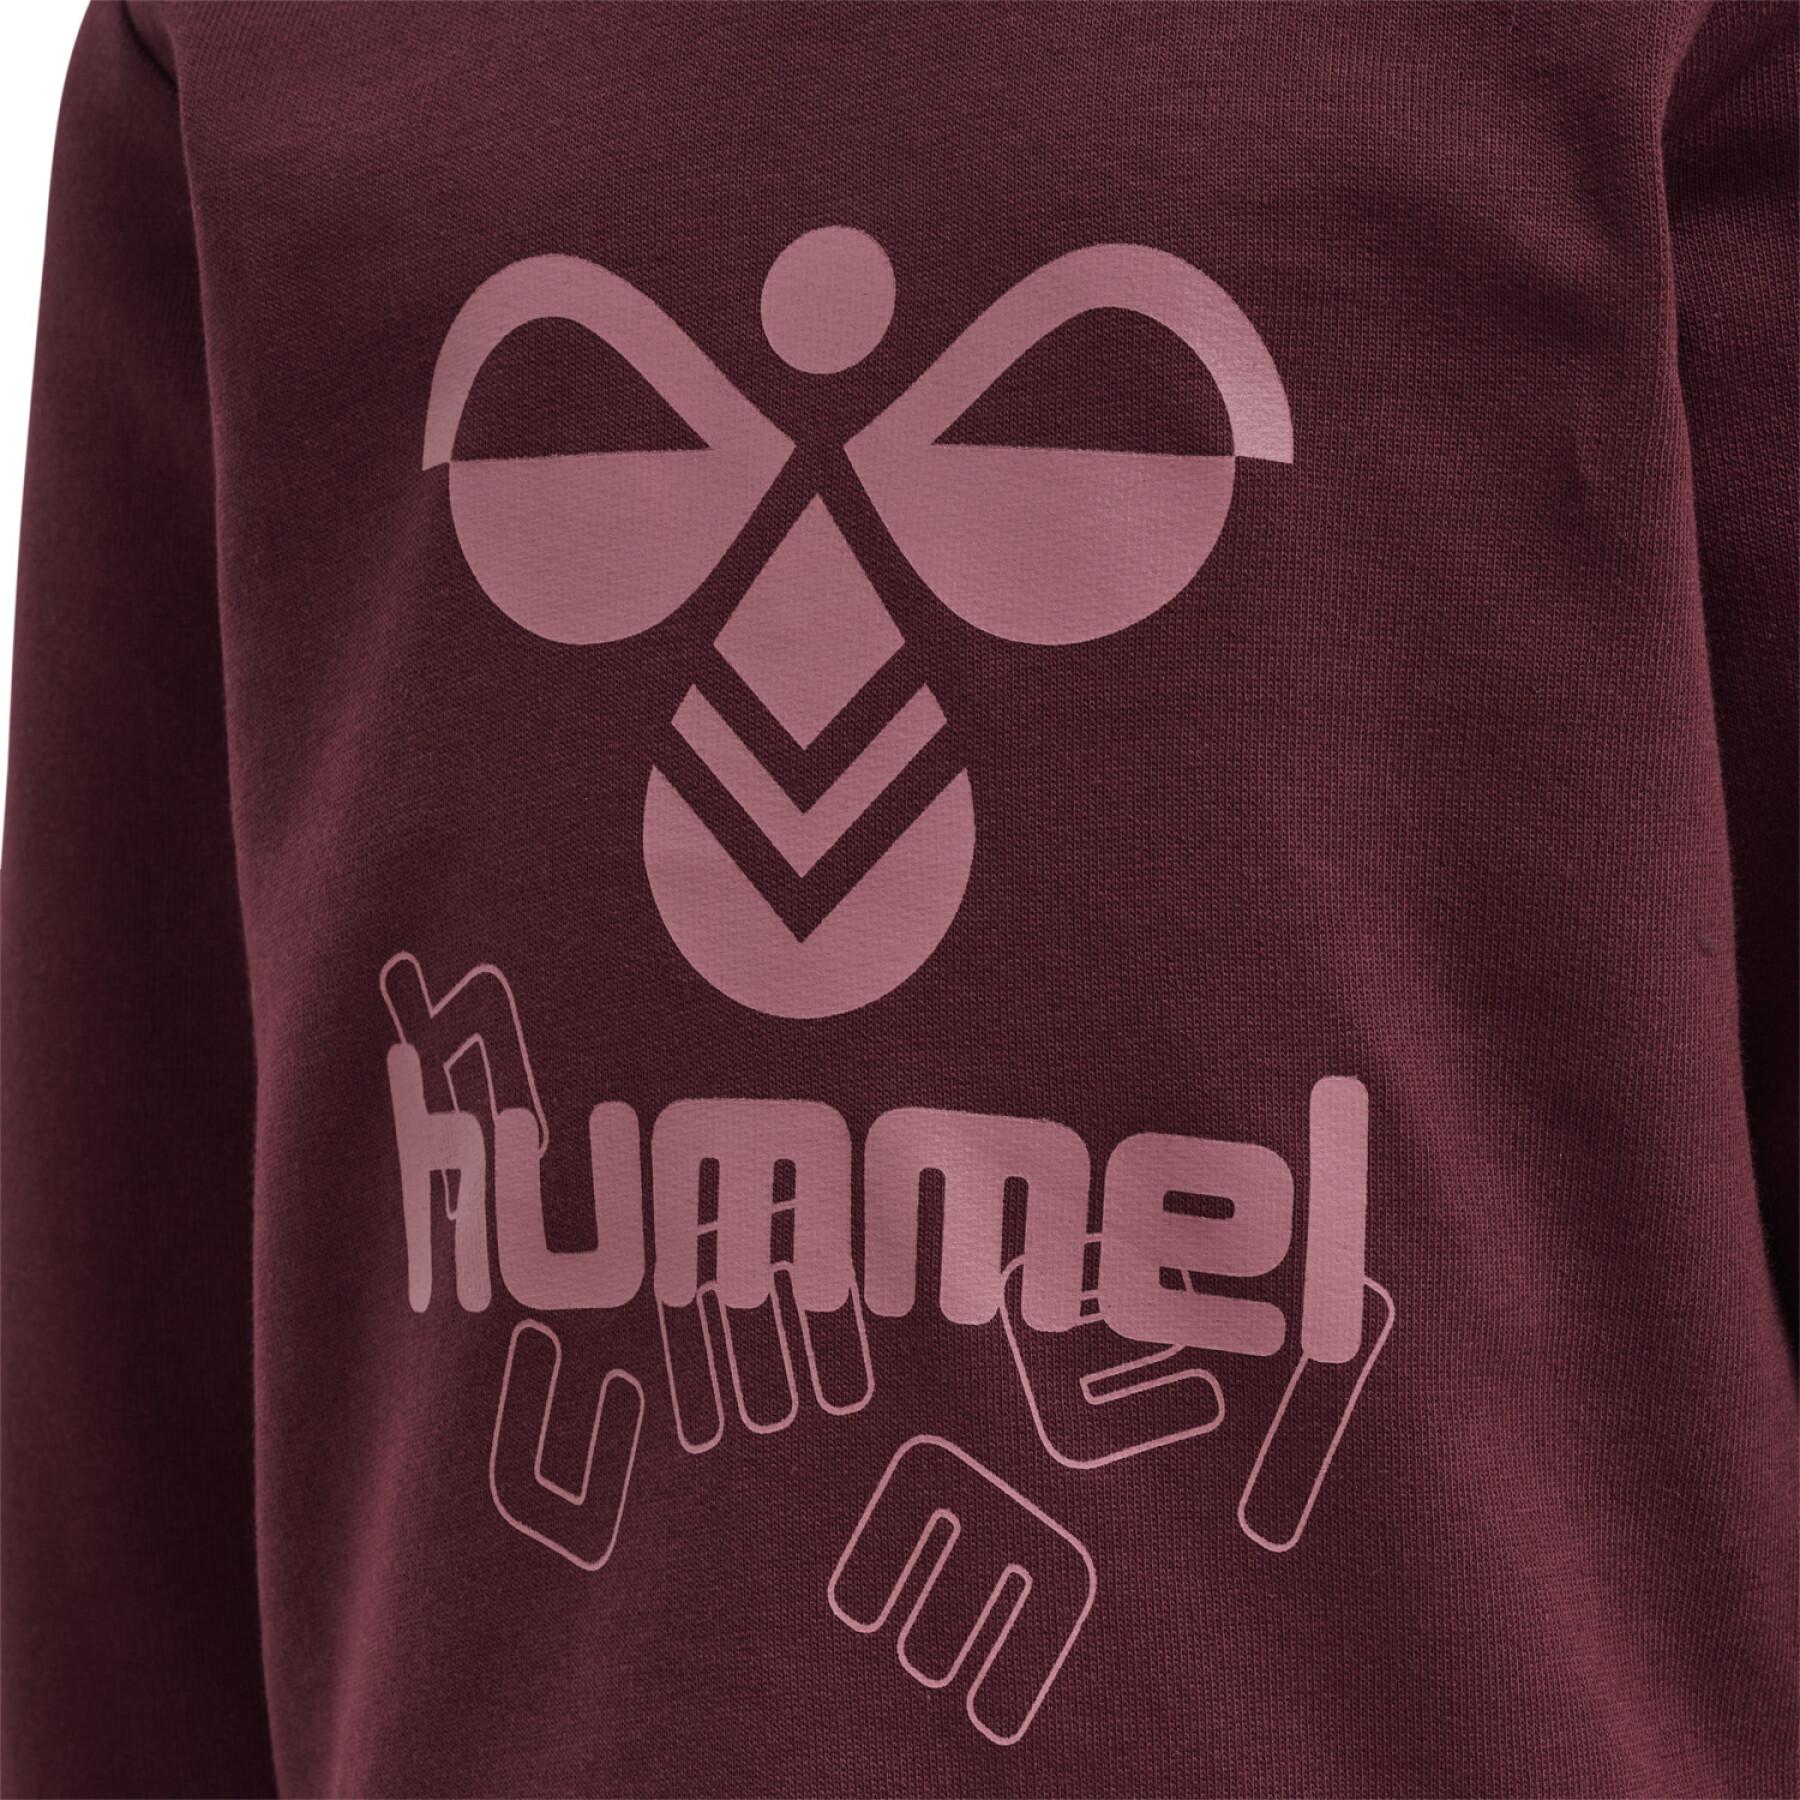 Bluza dla dziecka Hummel Spirit